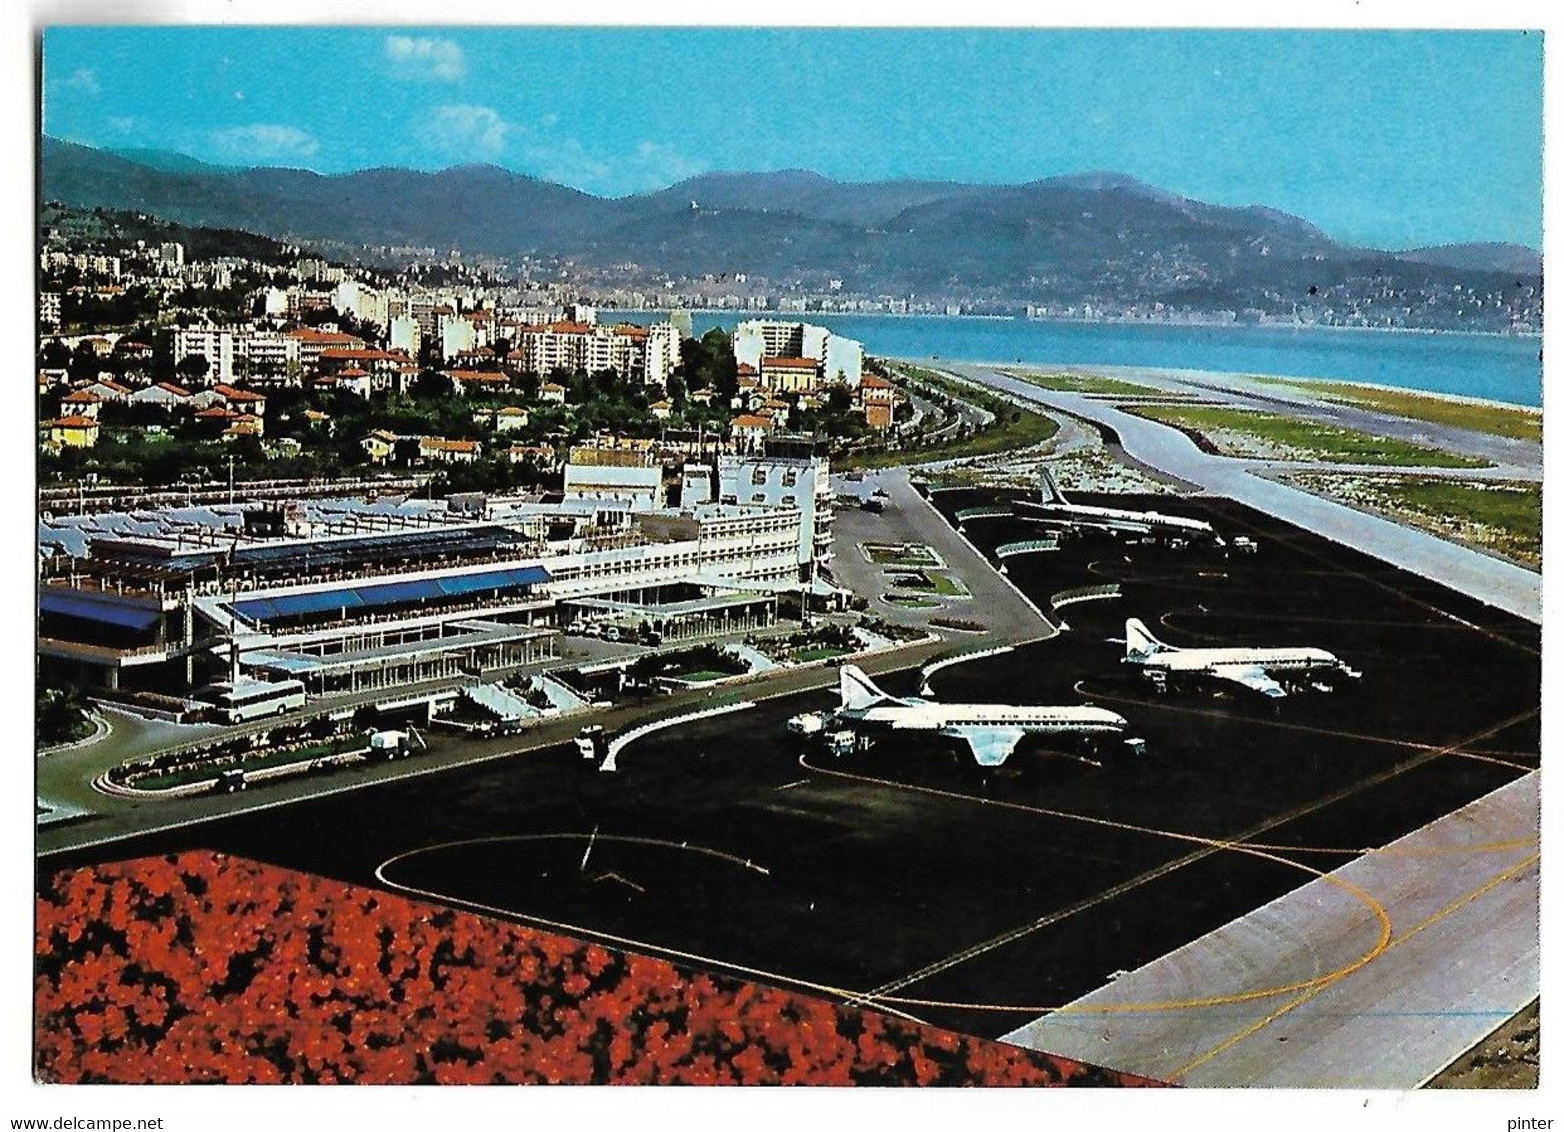 NICE - Vue Aérienne De L'Aéroport Nice-Côte D'Azur - Transport (air) - Airport